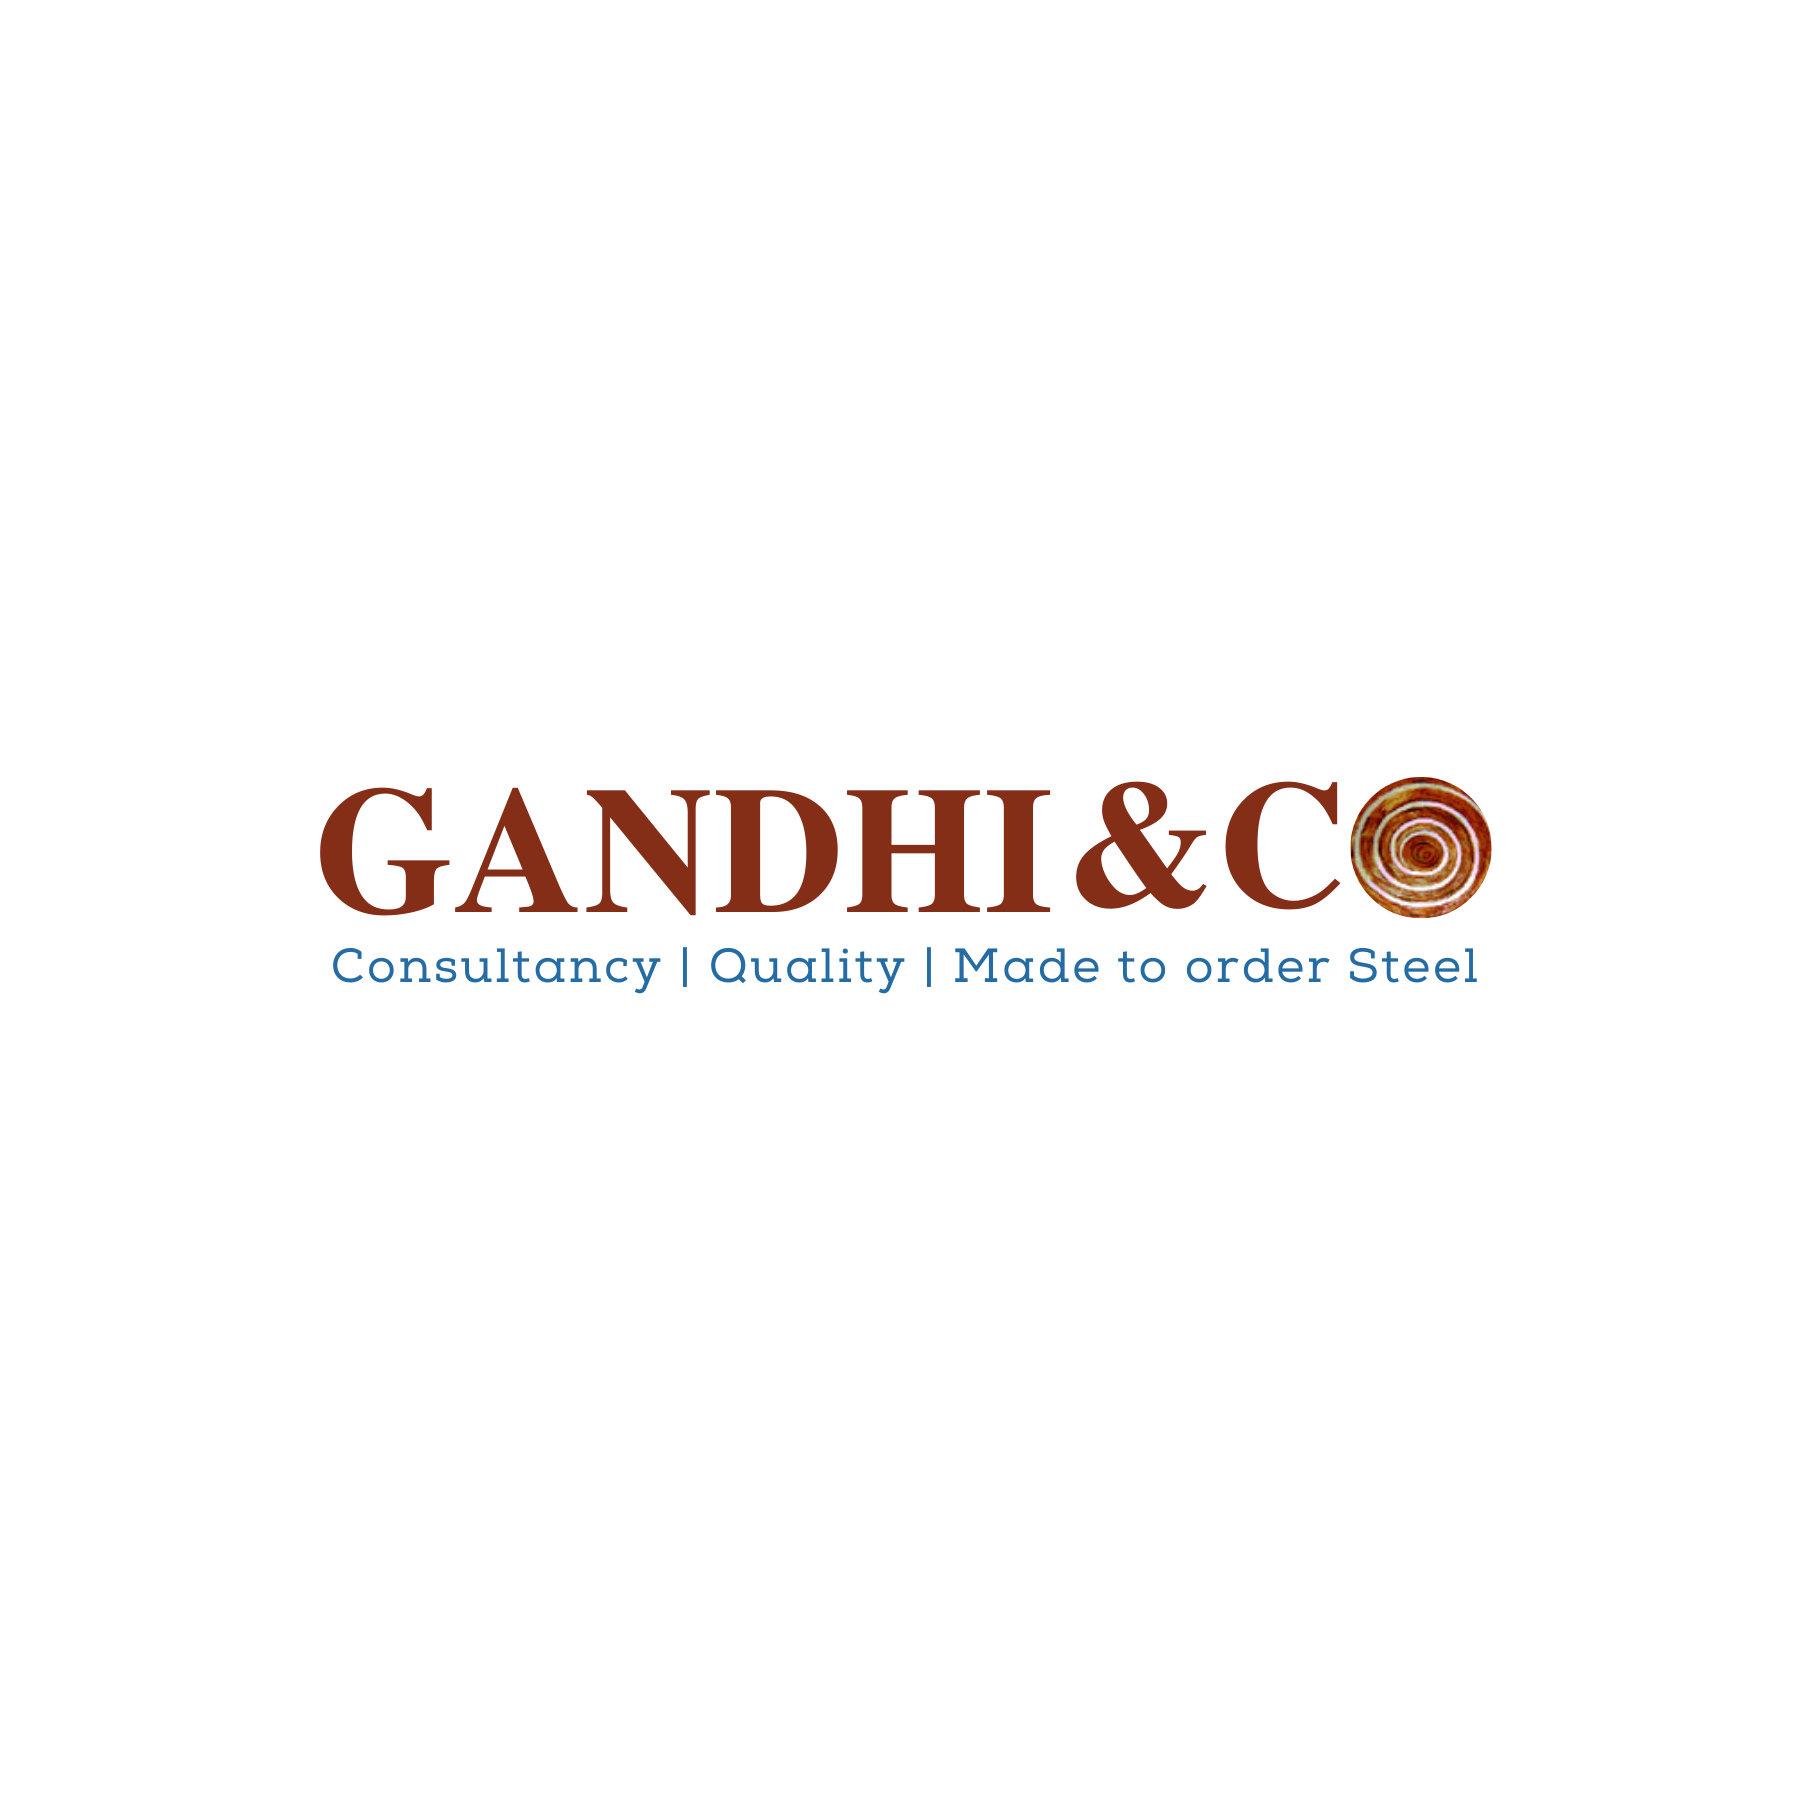 Gandhi & Co.